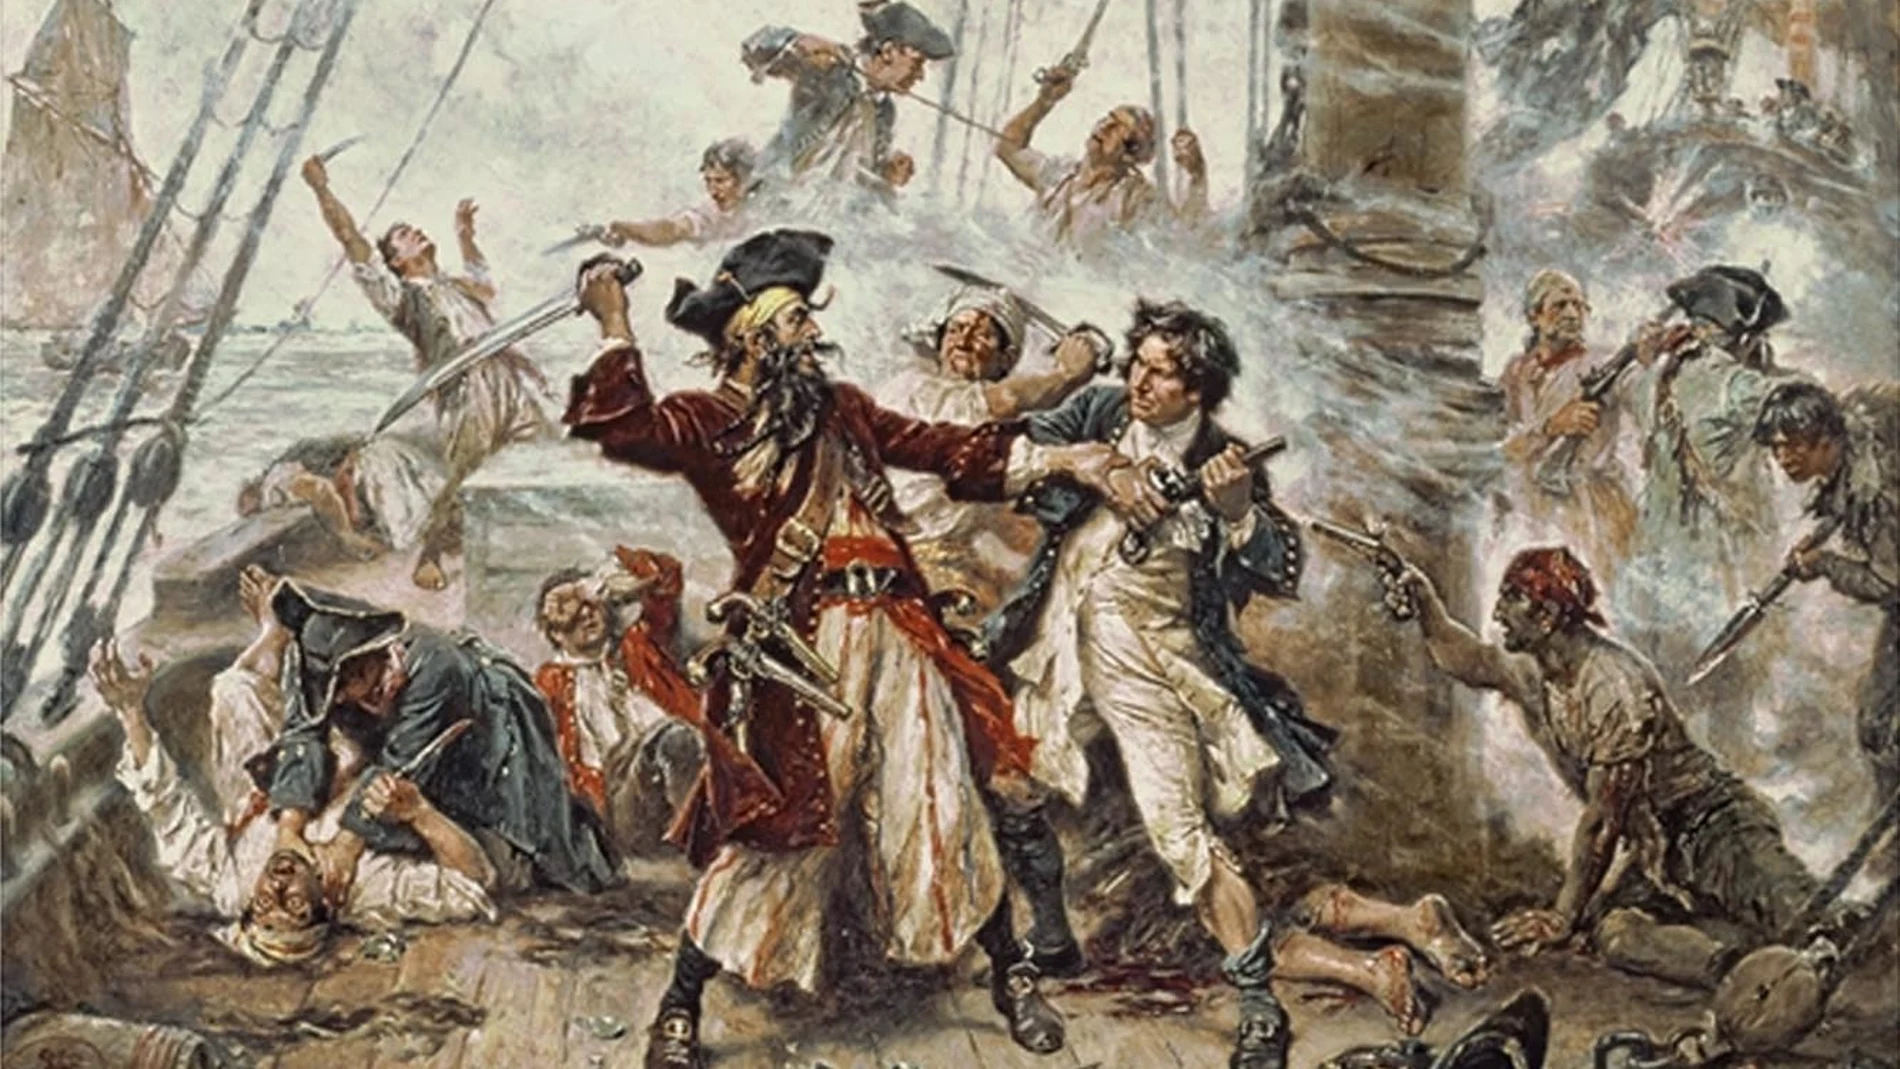 Barbanegra luchando contra el teniente Maynard en el apogeo de la Edad de Oro de la piratería